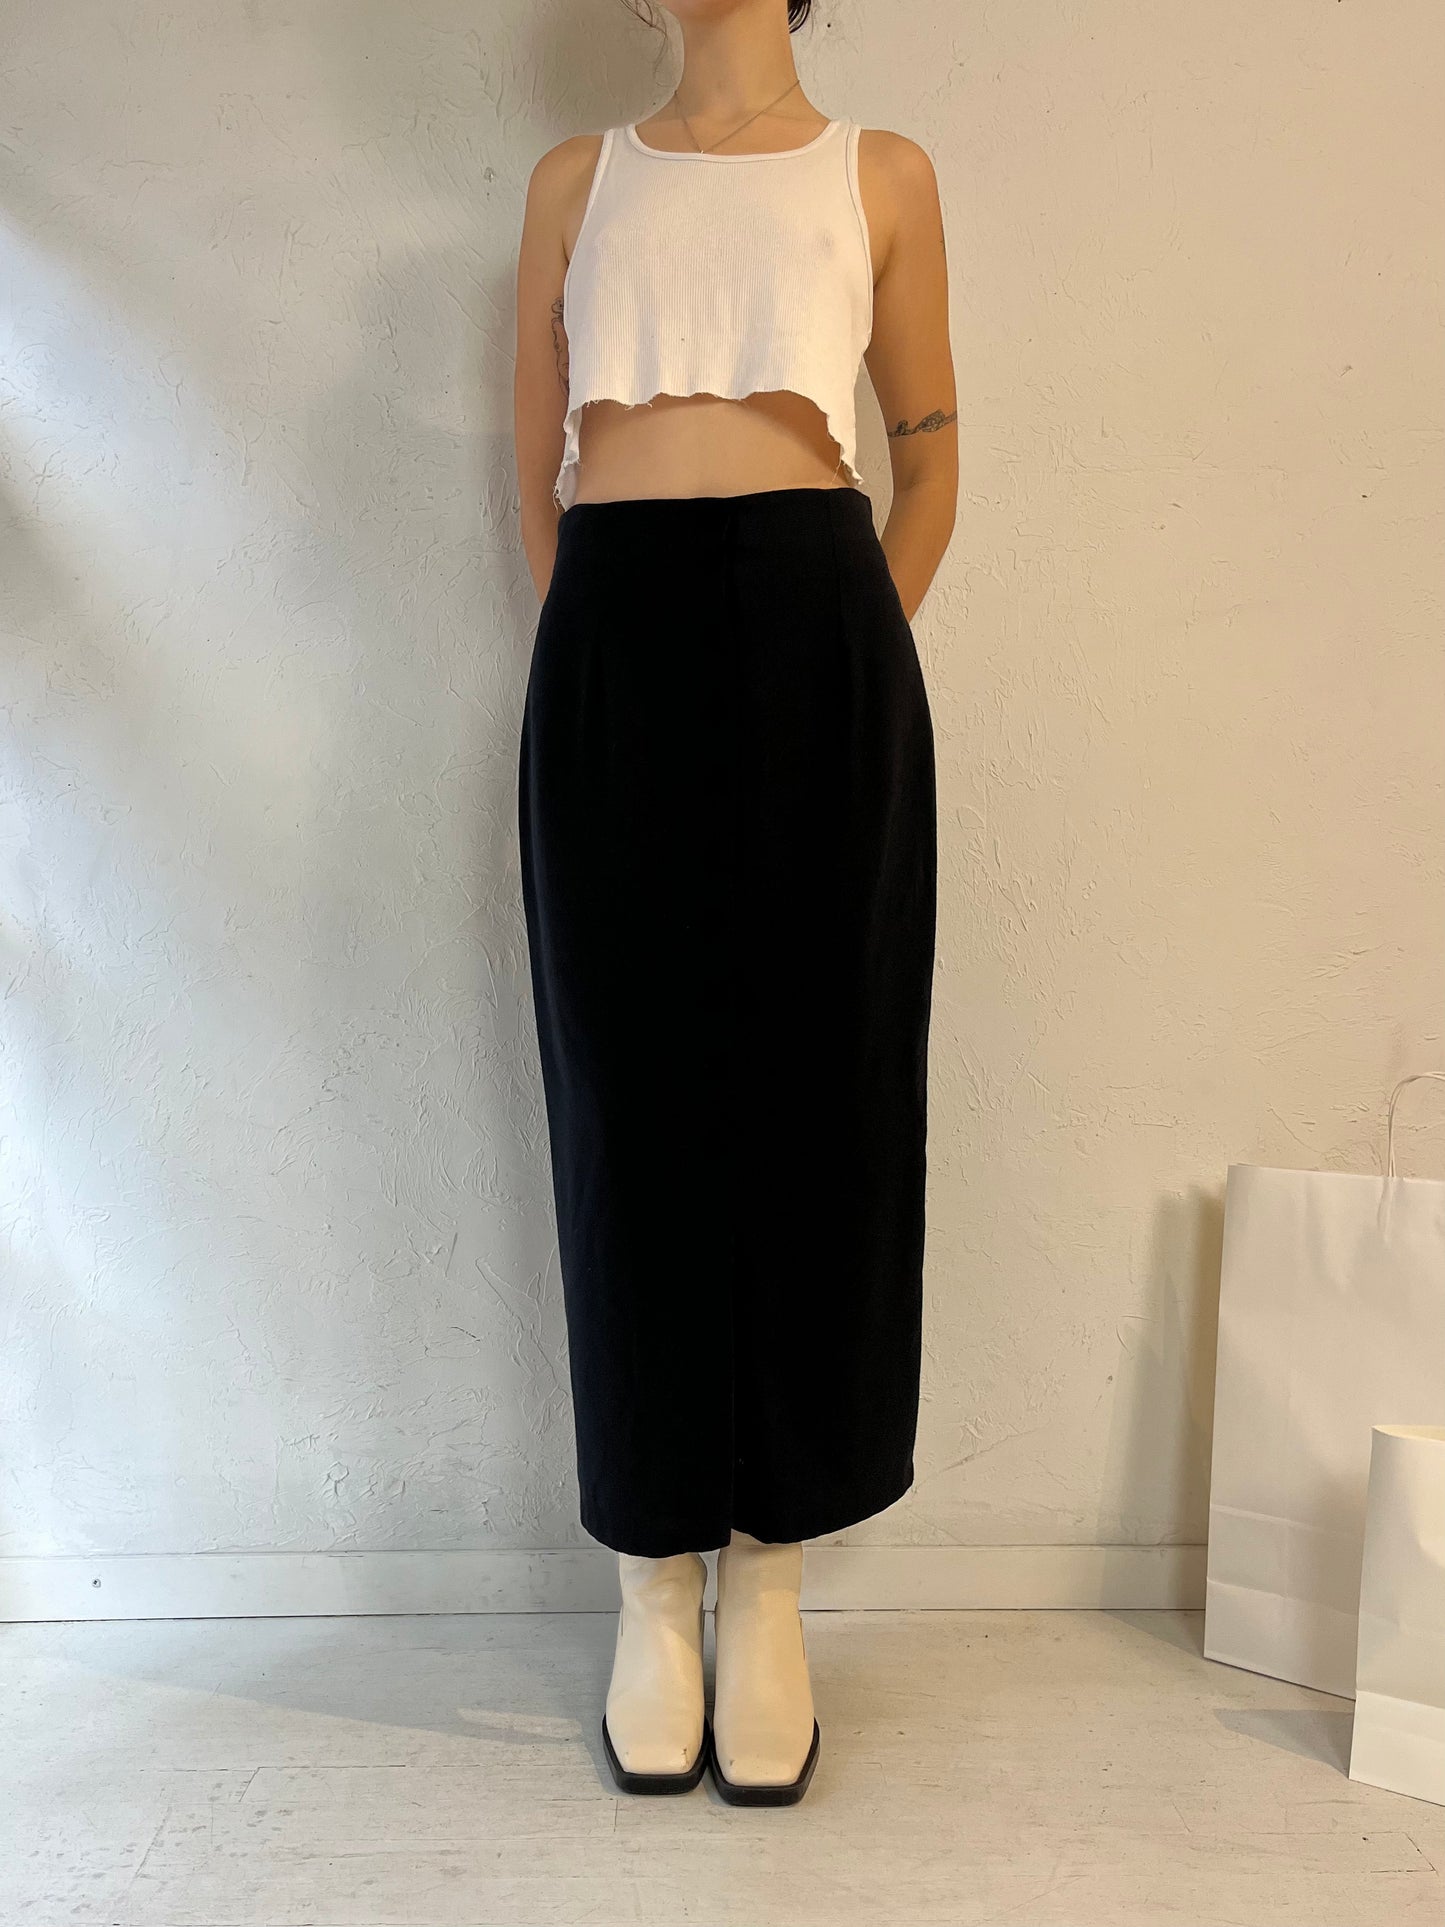 90s 'Beechers Brook' Black Button Up Skirt / Medium